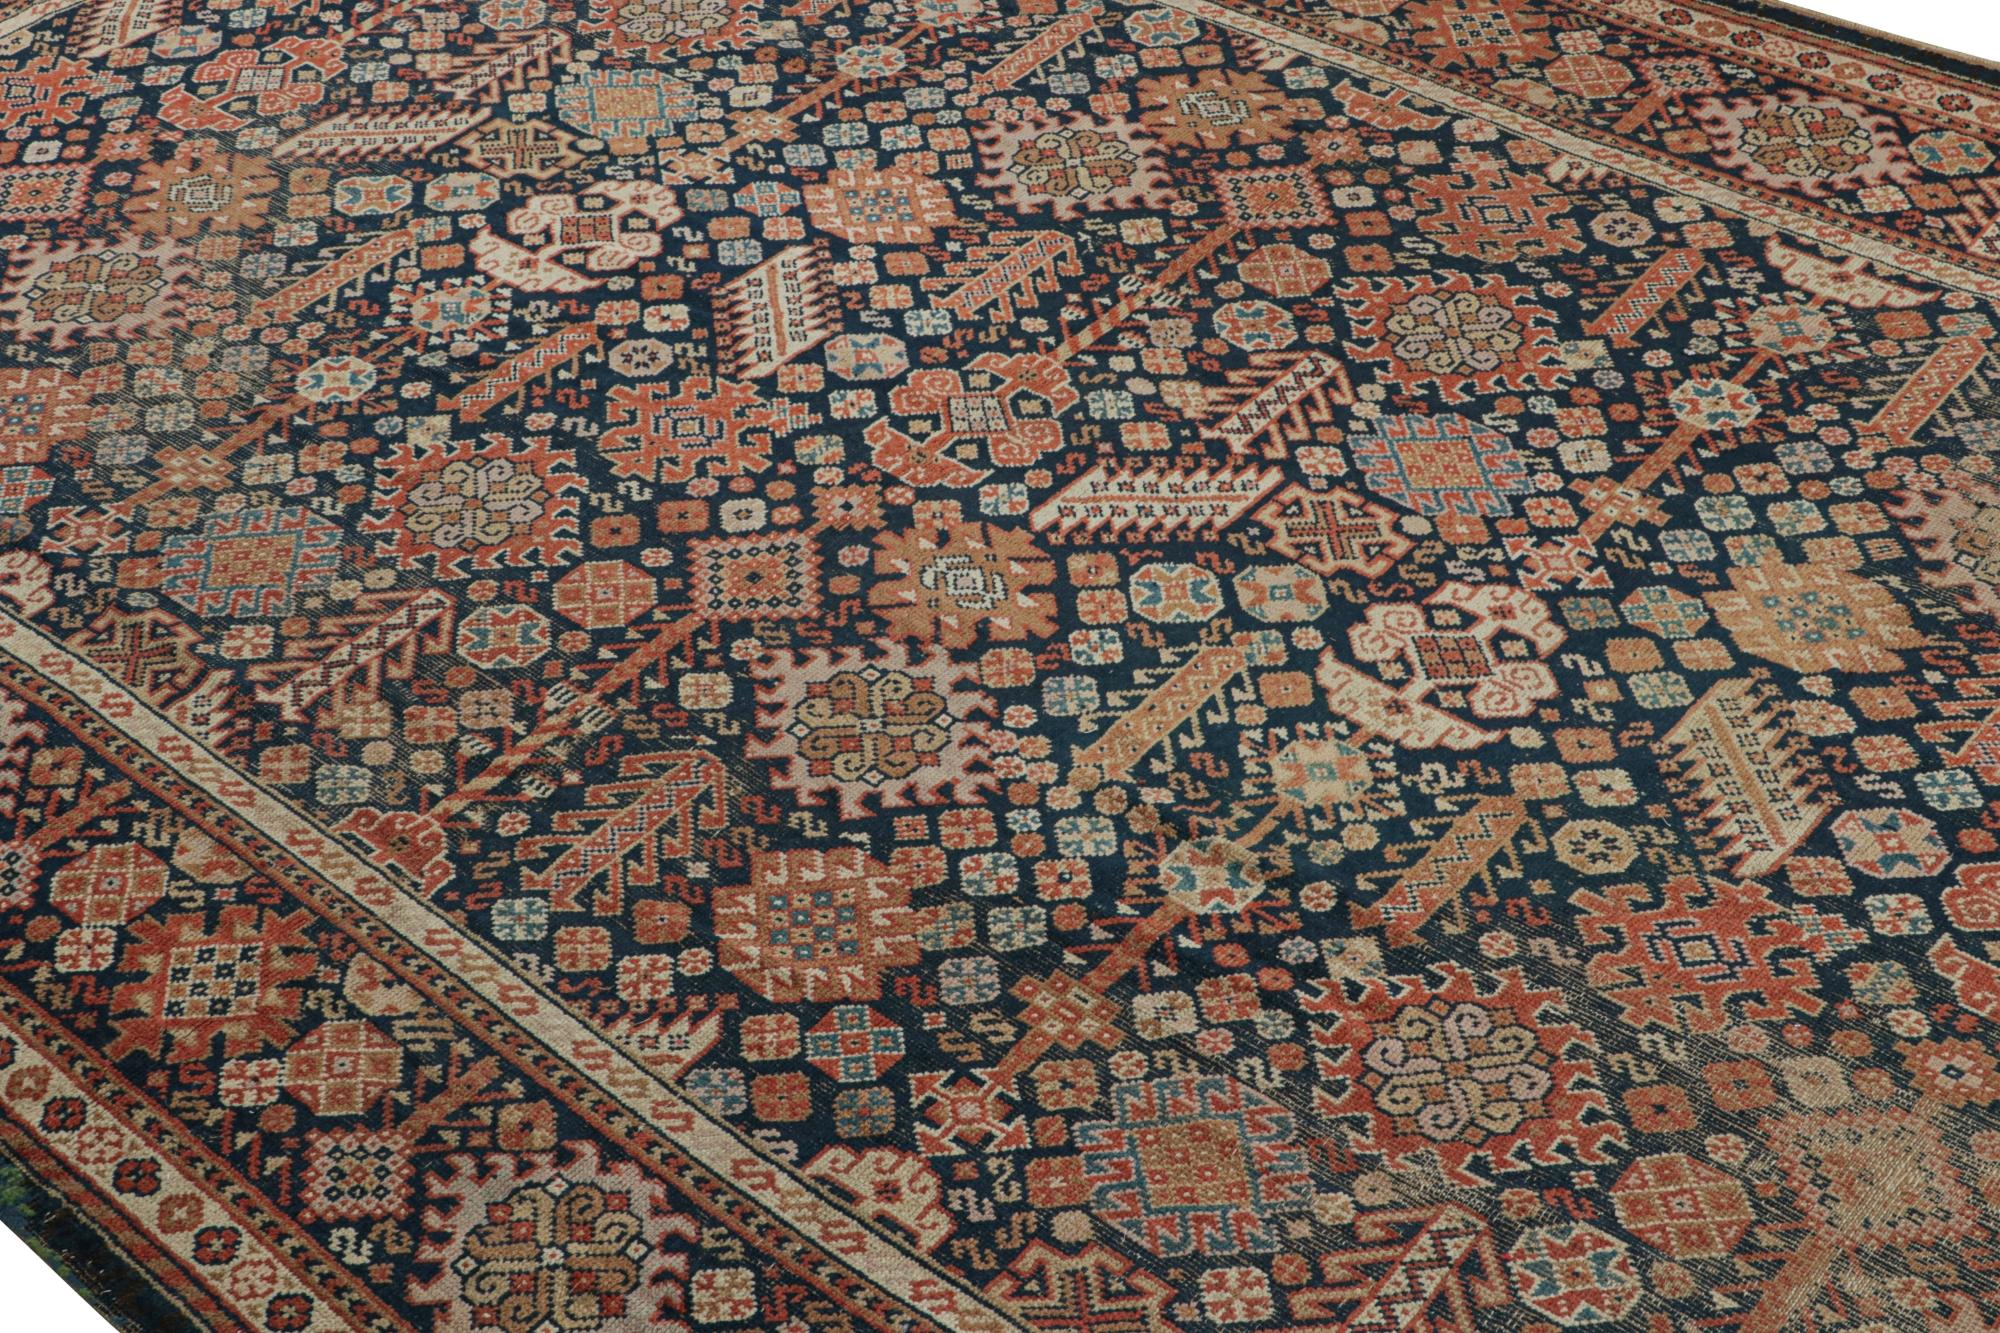 Dieser antike Teppich im Format 13x20 ist ein seltenes Meisterwerk aus der Voysey-Ära, das von persischen Teppichen der Provenienz Shiraz inspiriert ist. Dieser handgeknüpfte Wollteppich aus Irland (ca. 1910-1920) ist eine äußerst sammelwürdige